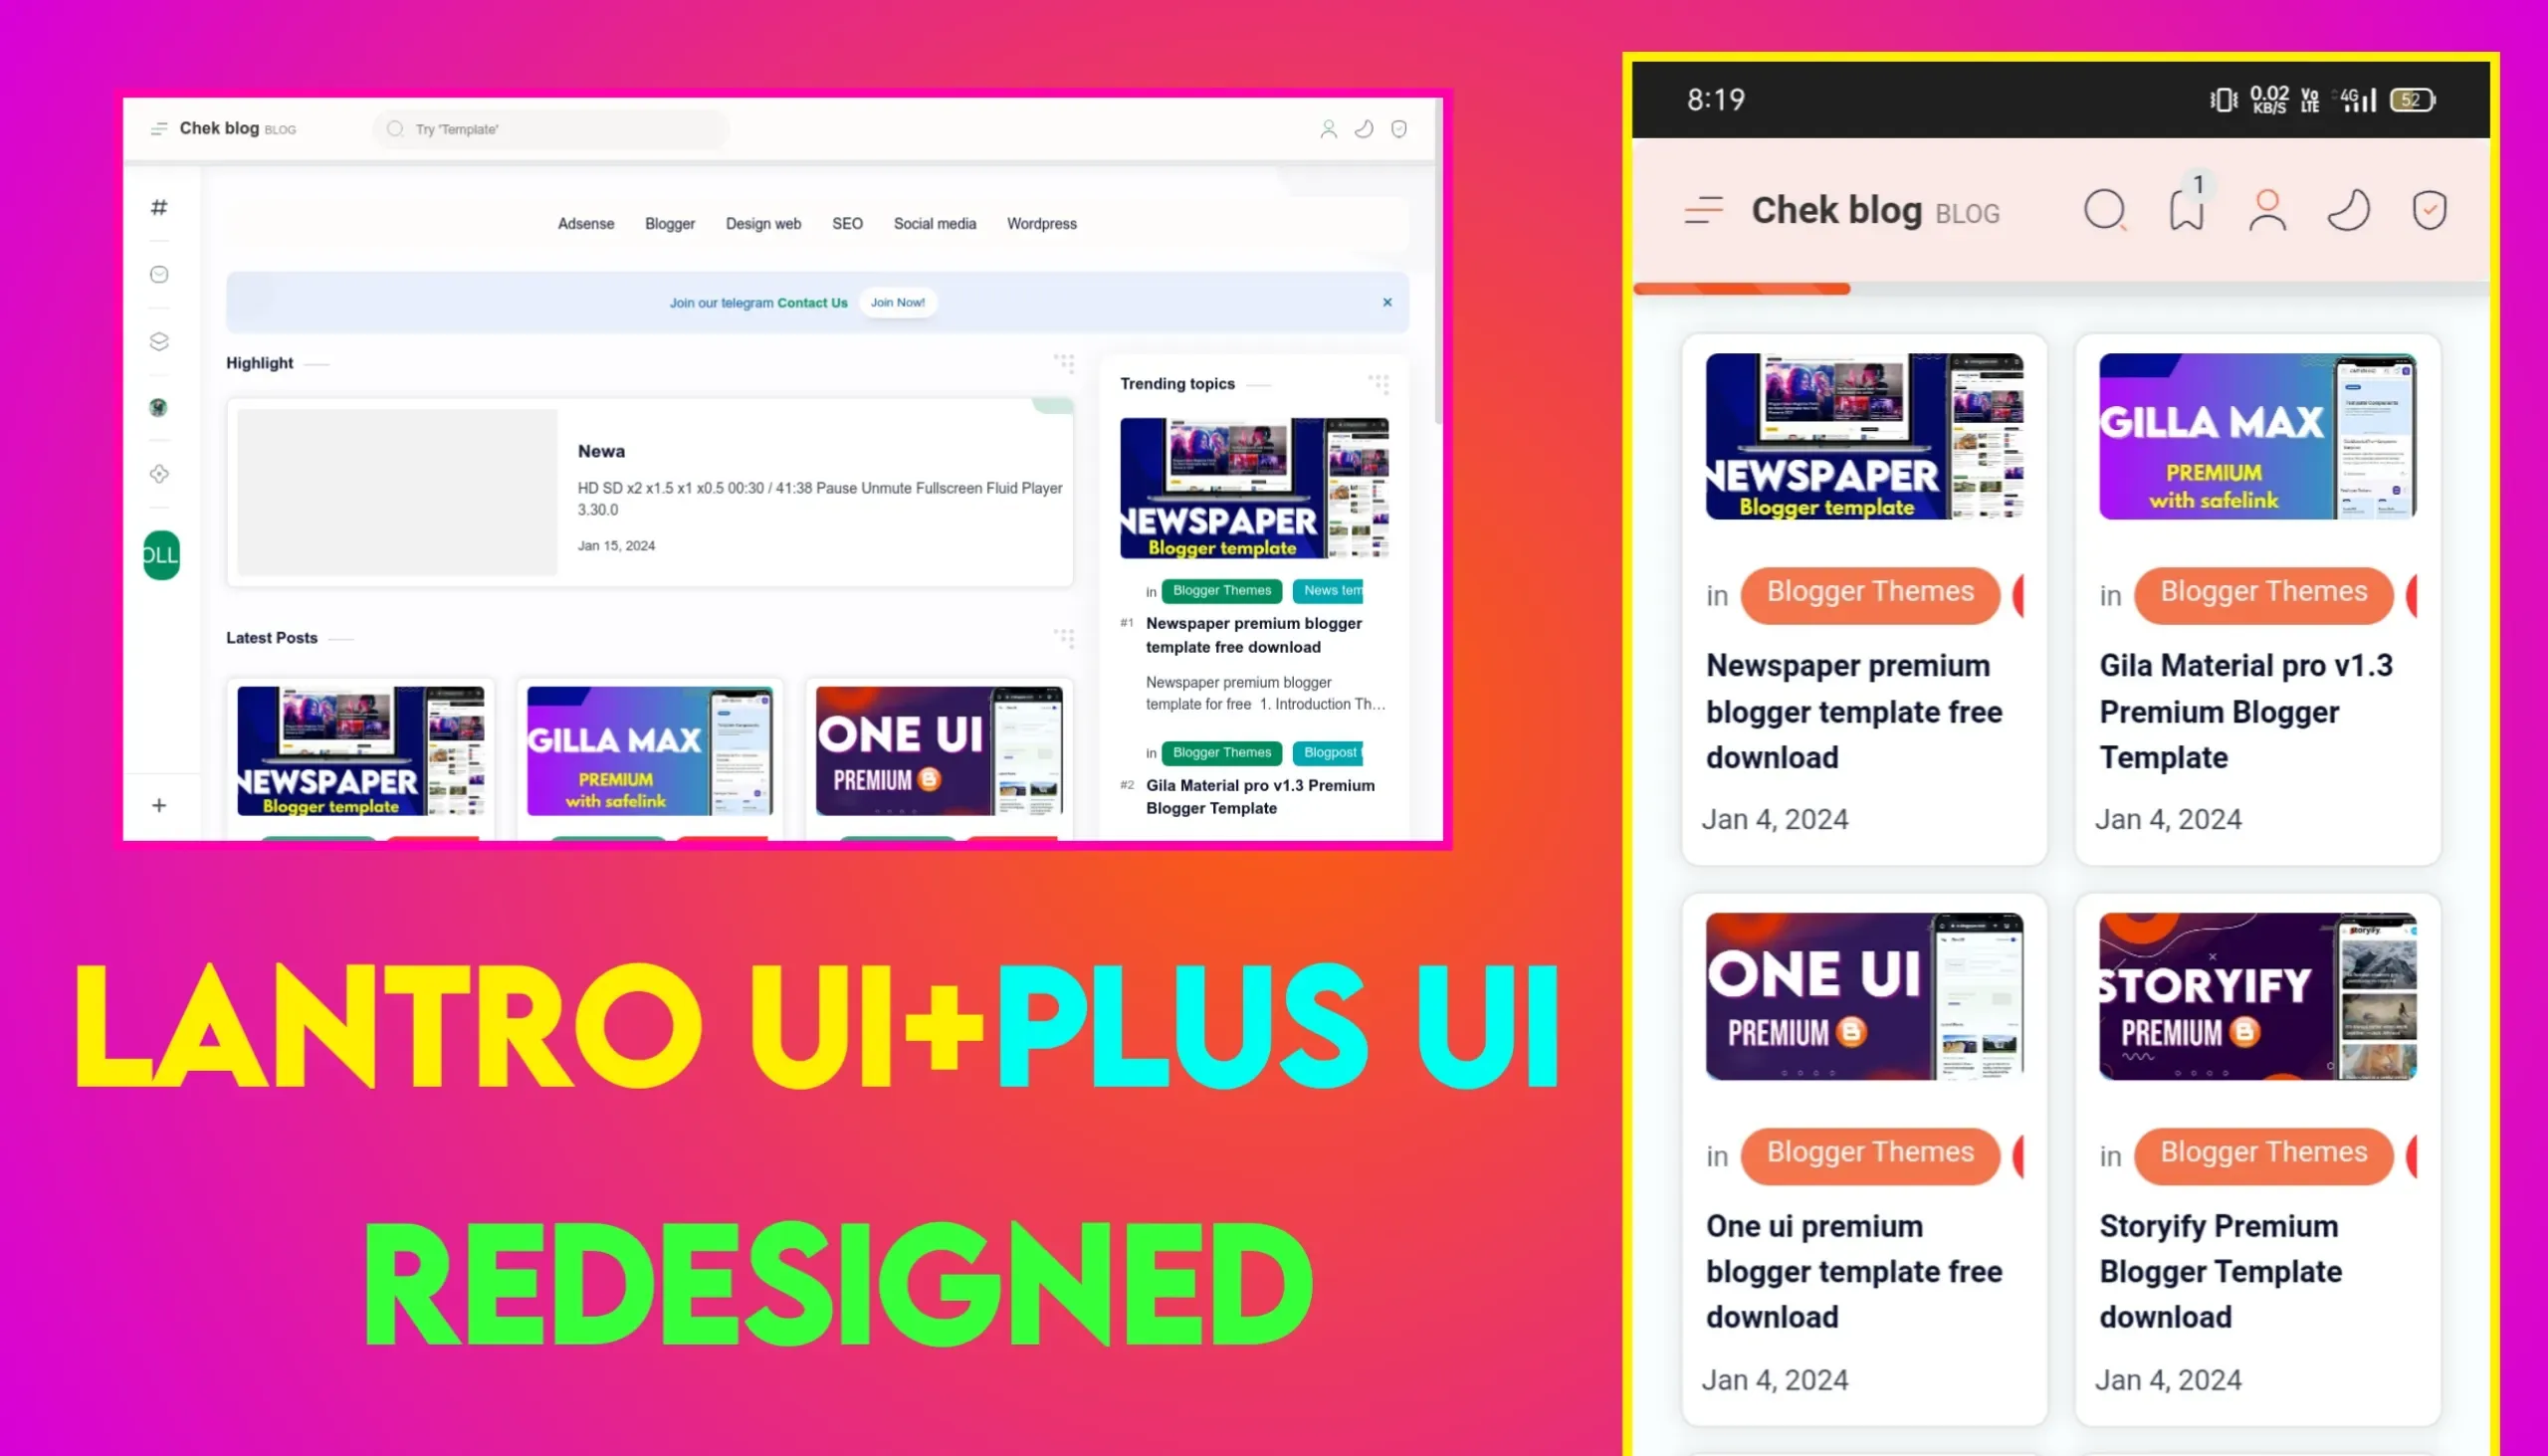 Lantro UI + Plus UI Redesigned Premium Blogger Template